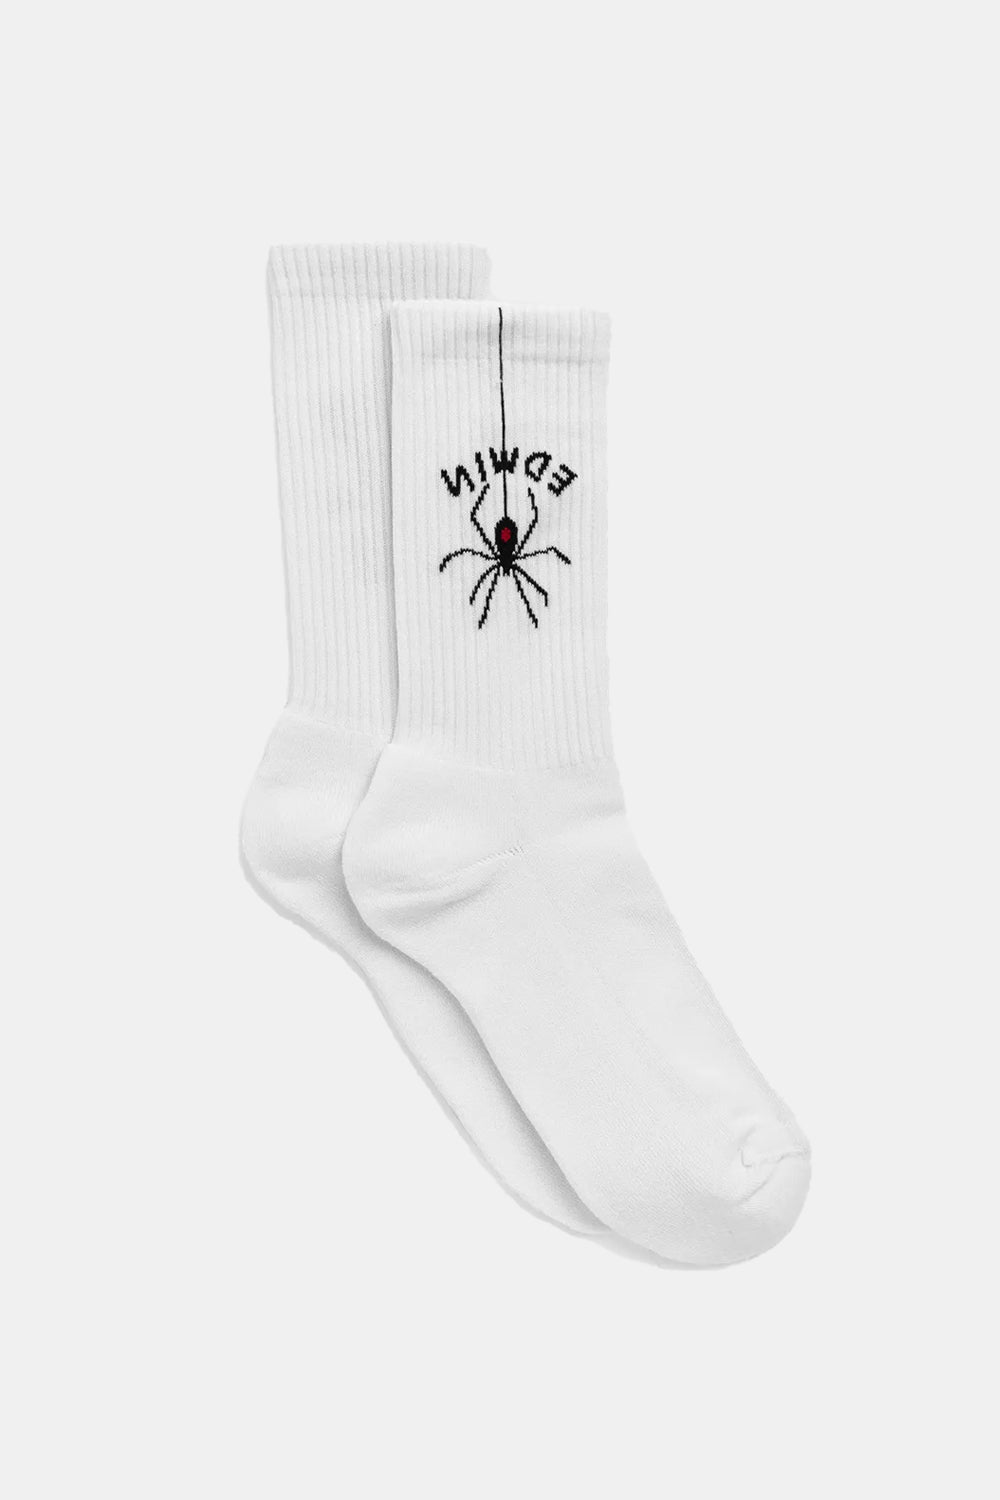 Edwin Spider Socks (White)